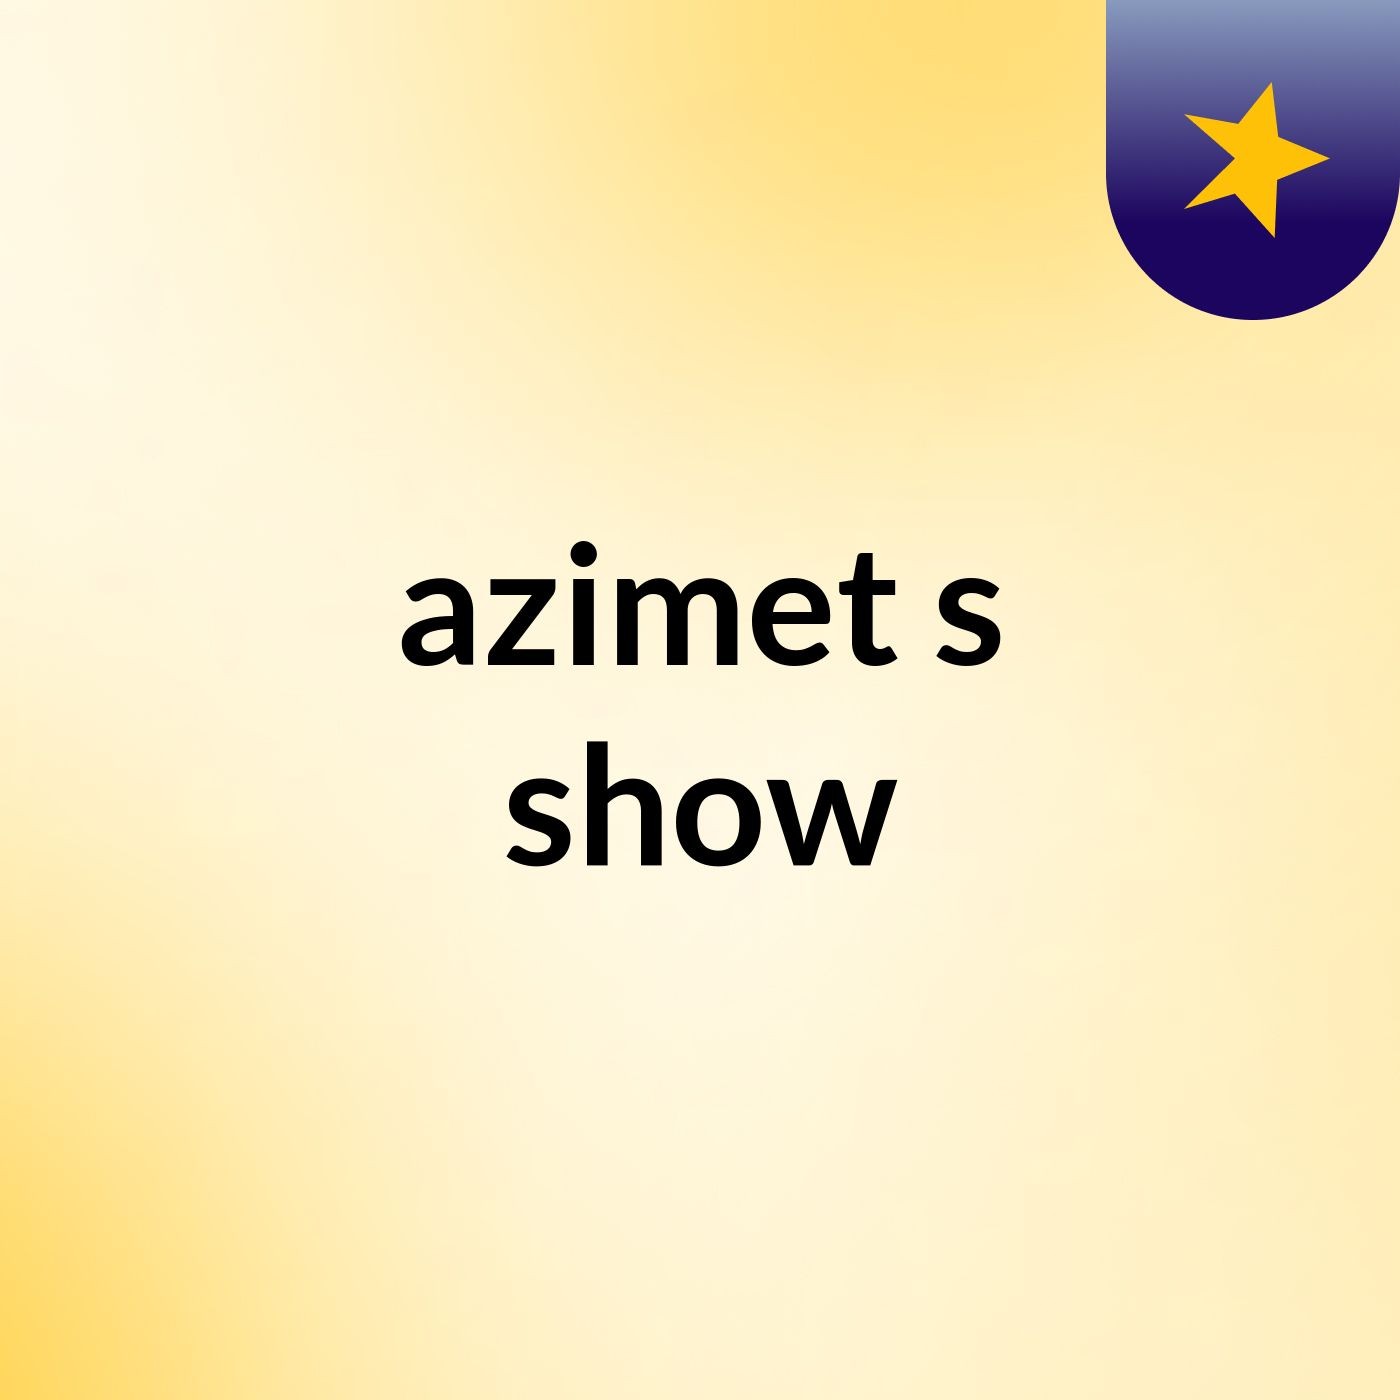 azimet's show